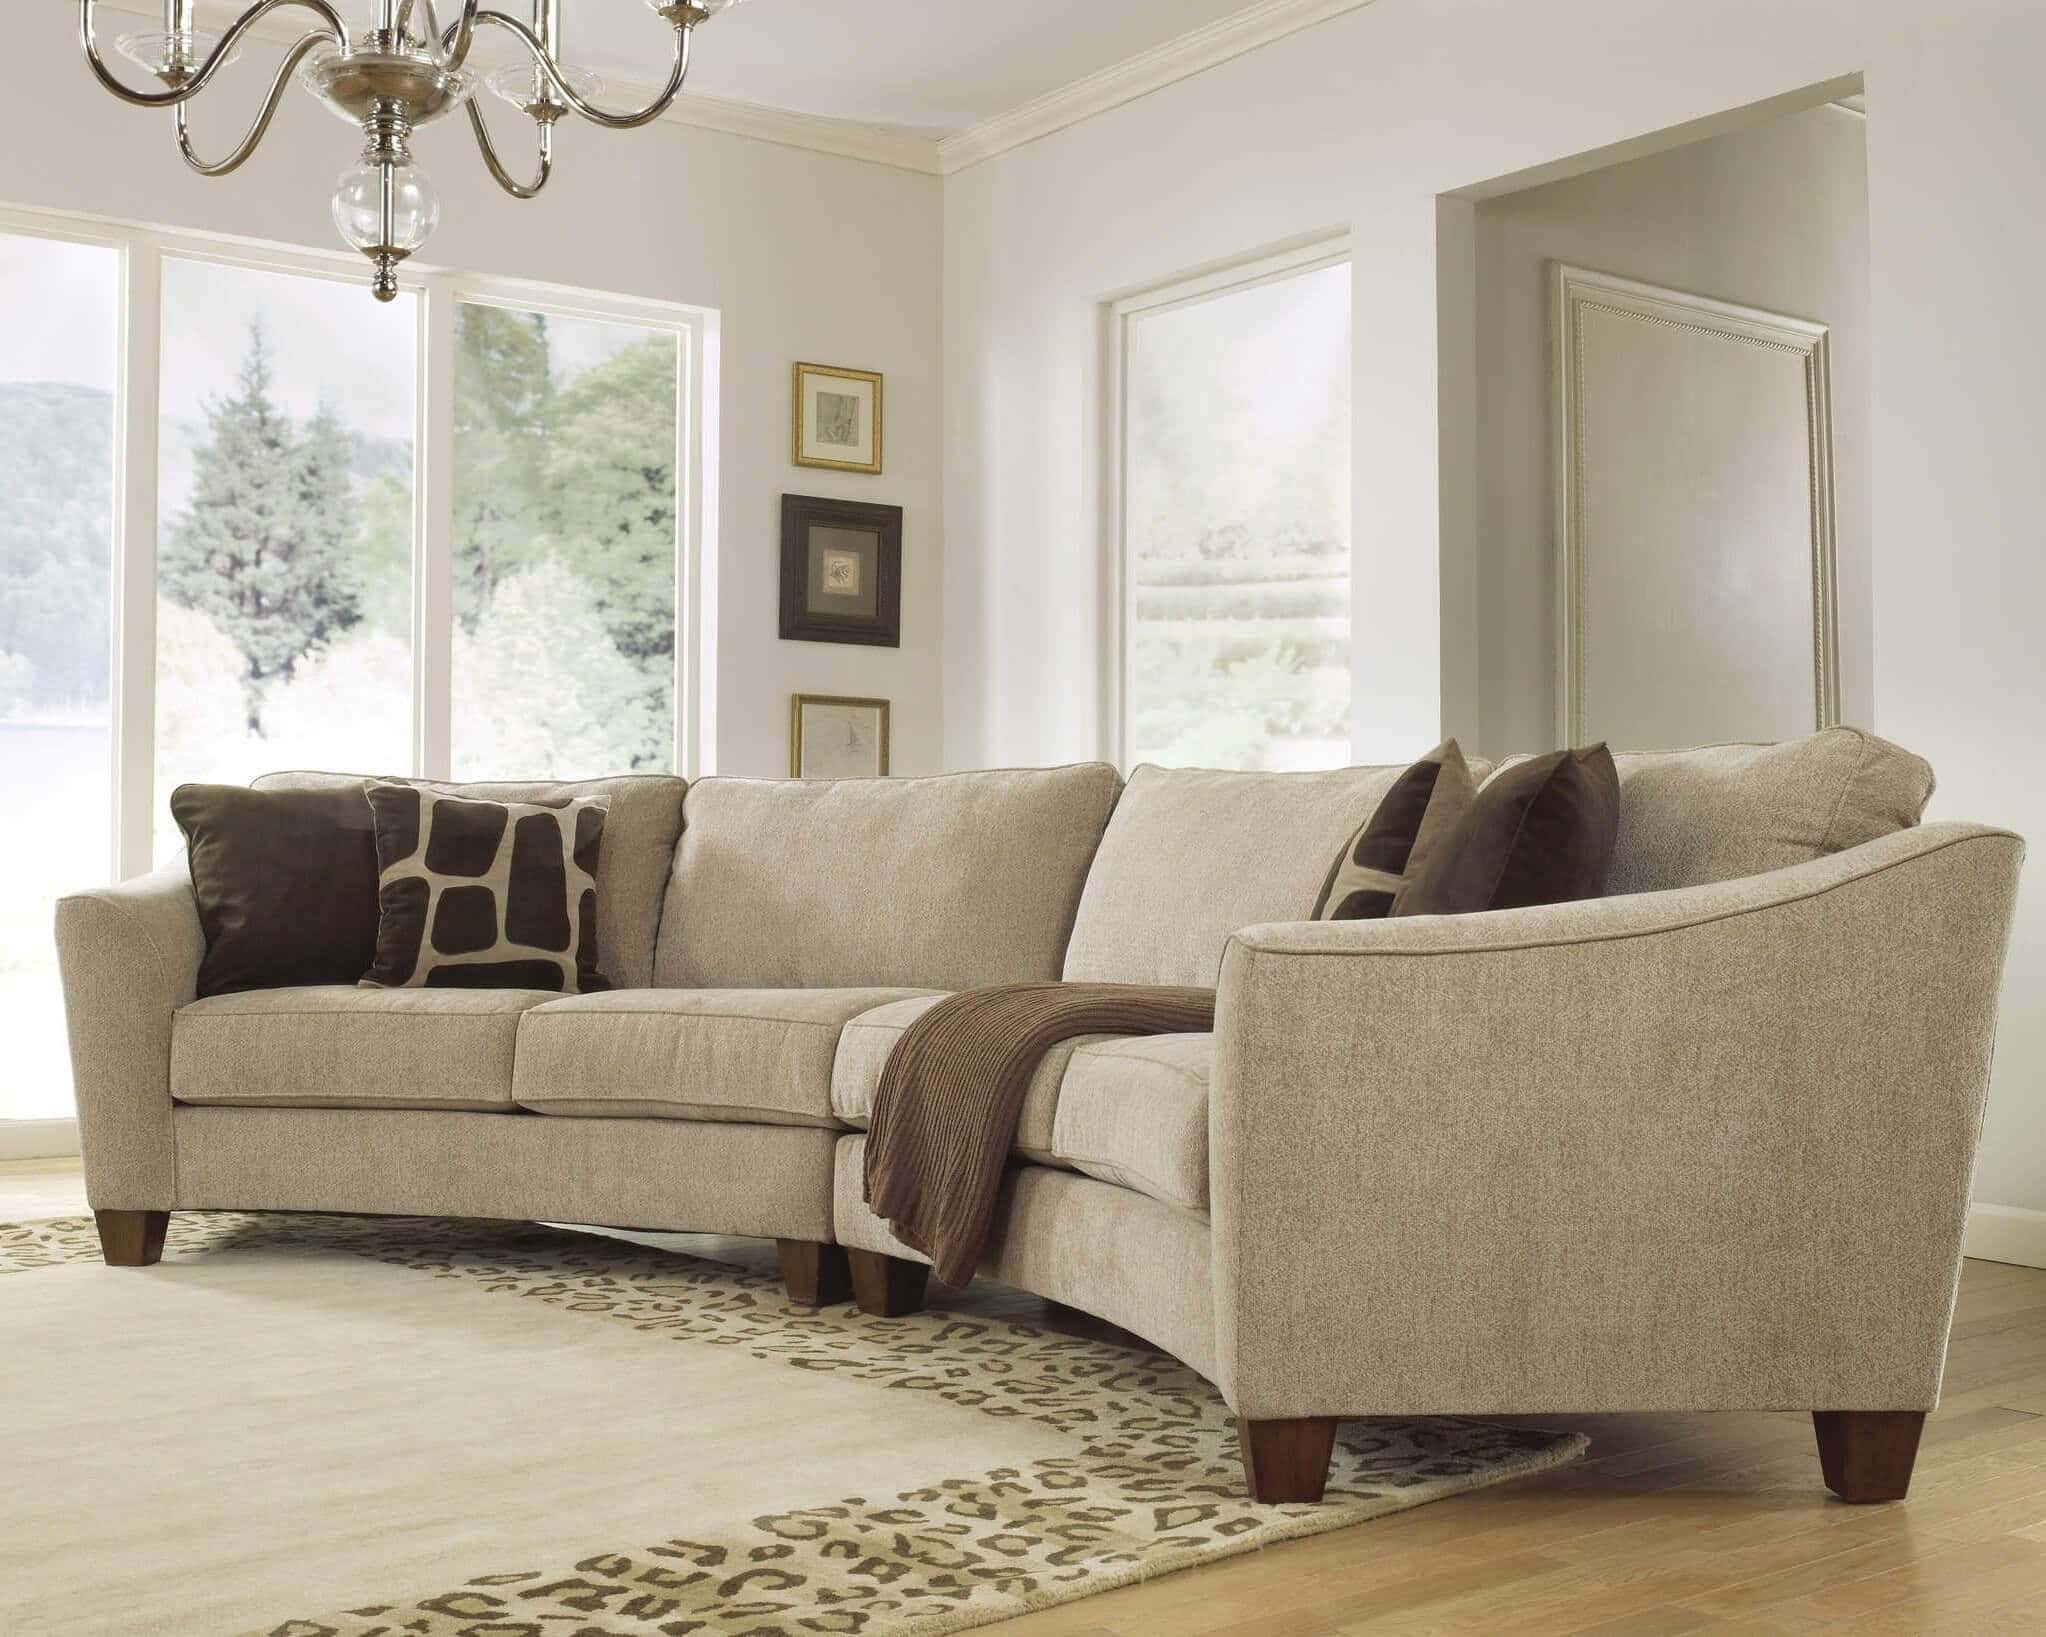 Amazing Contemporary Curved Sofa Designs Ideas  Live Enhanced